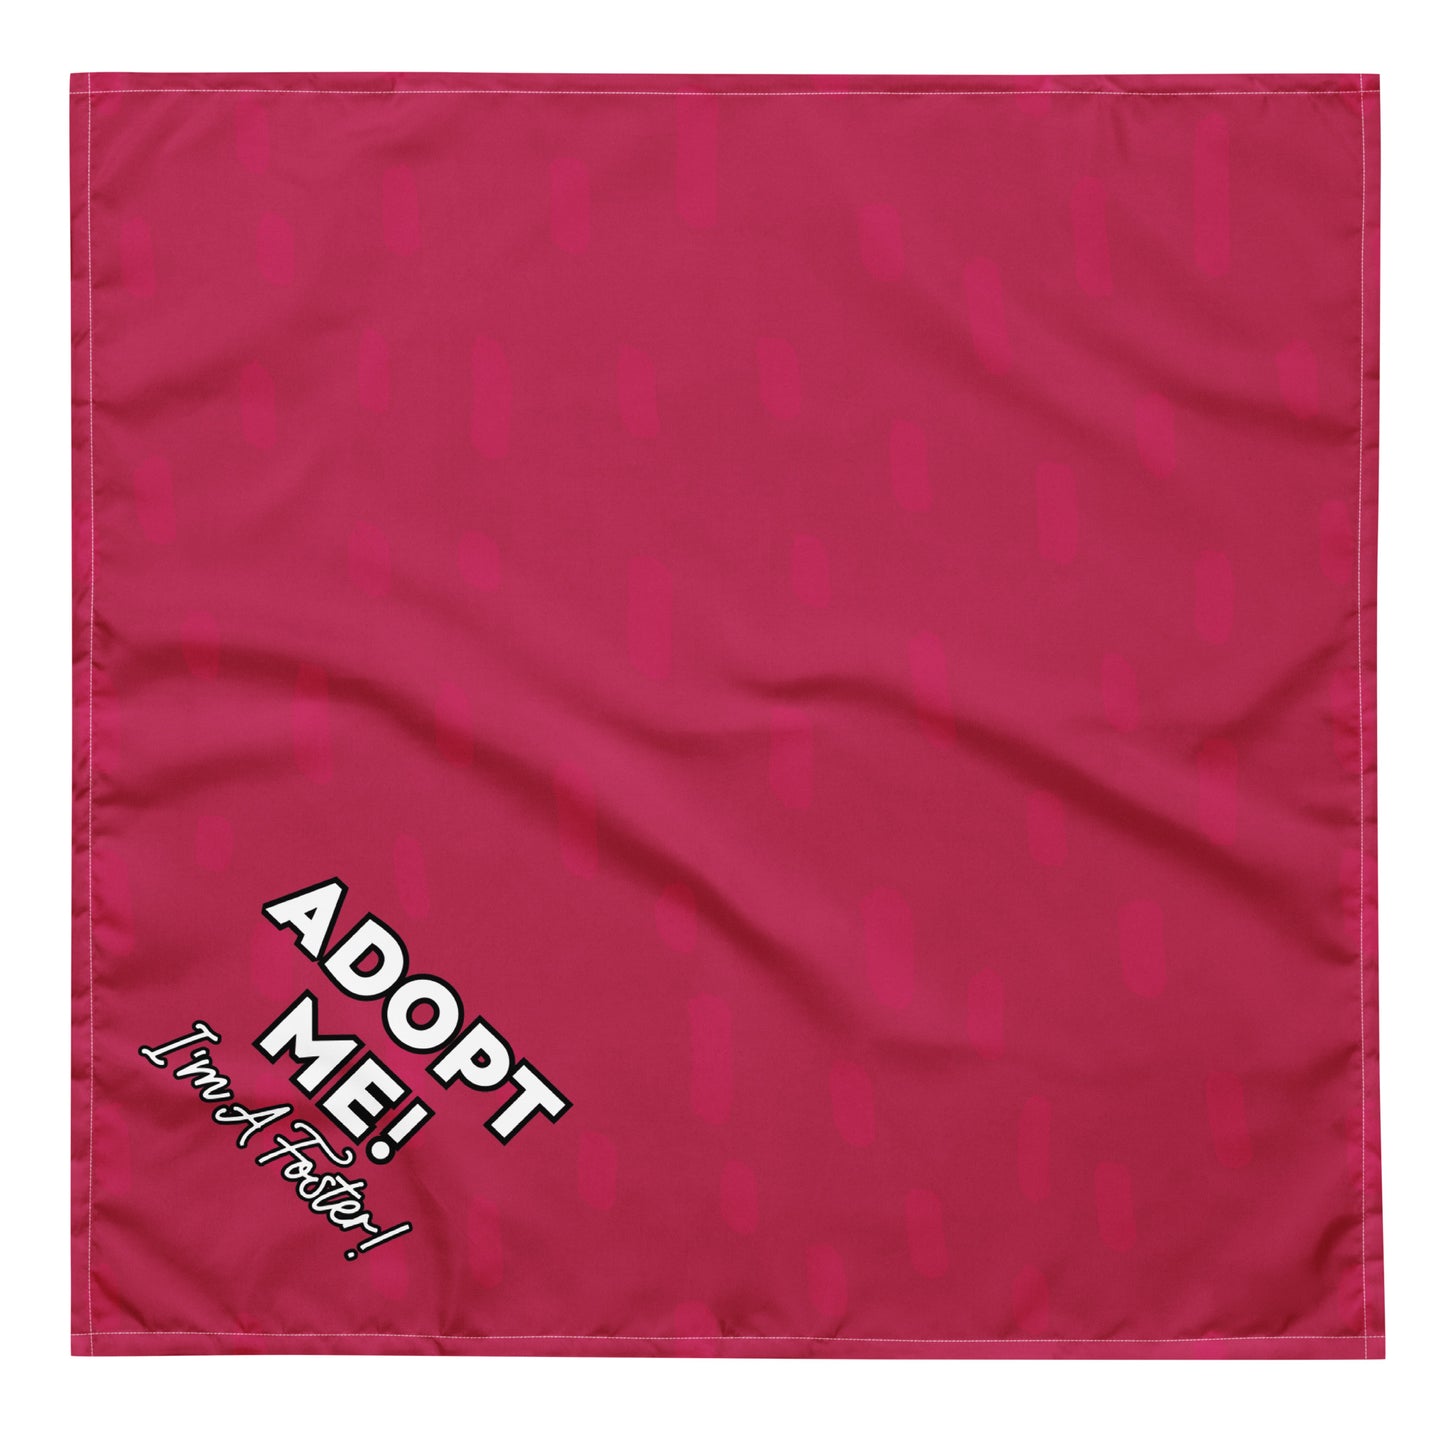 "Adopt Me" Pink Dog Bandana